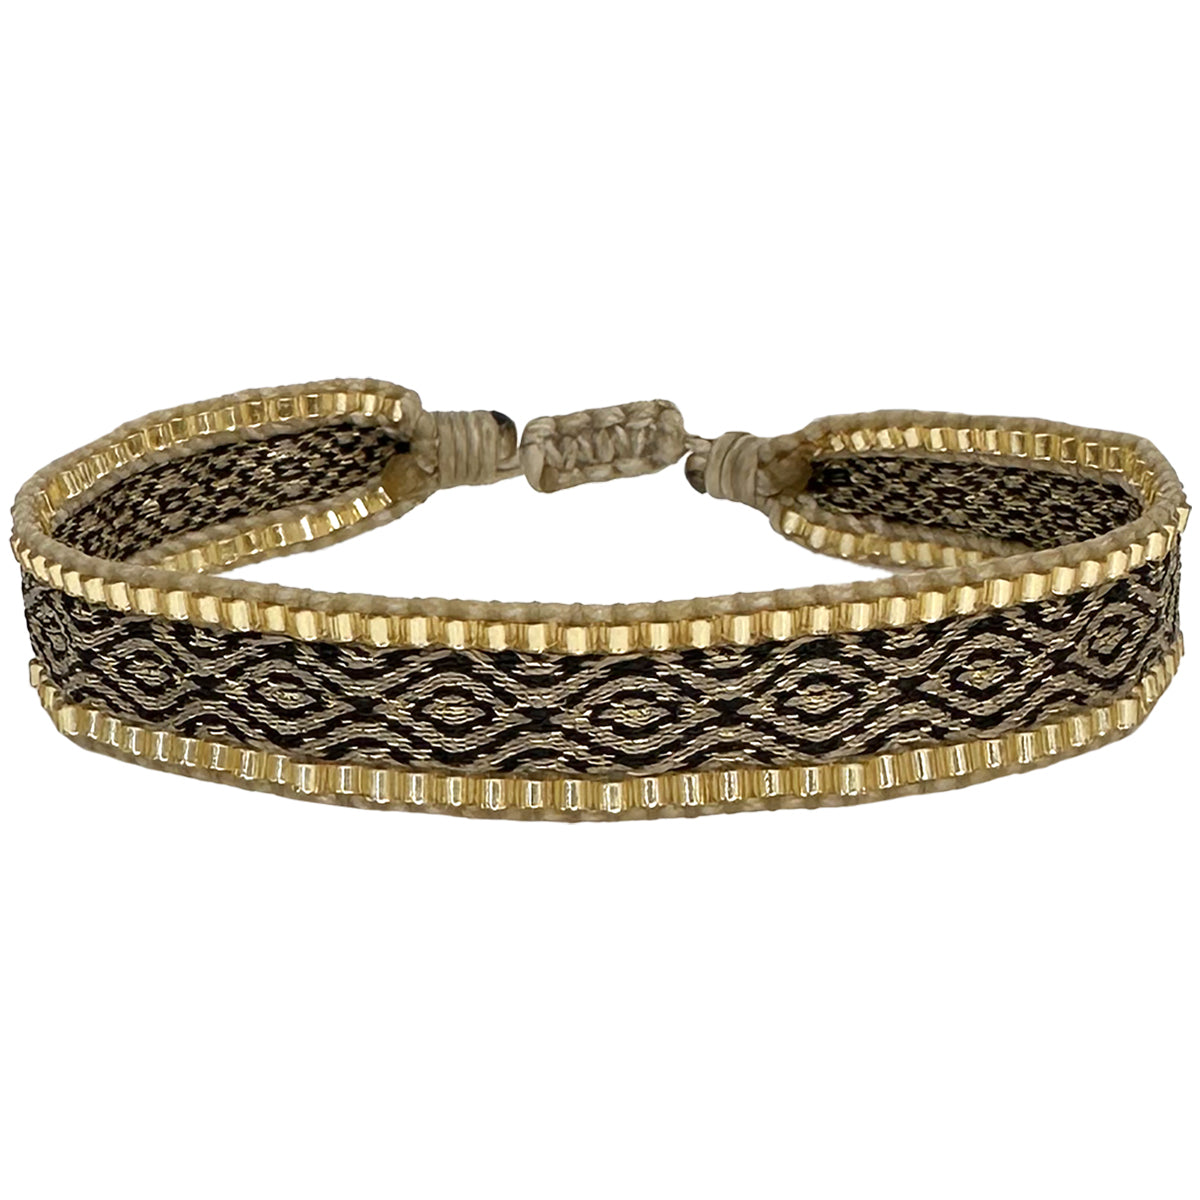 Handmade black and gold bracelet